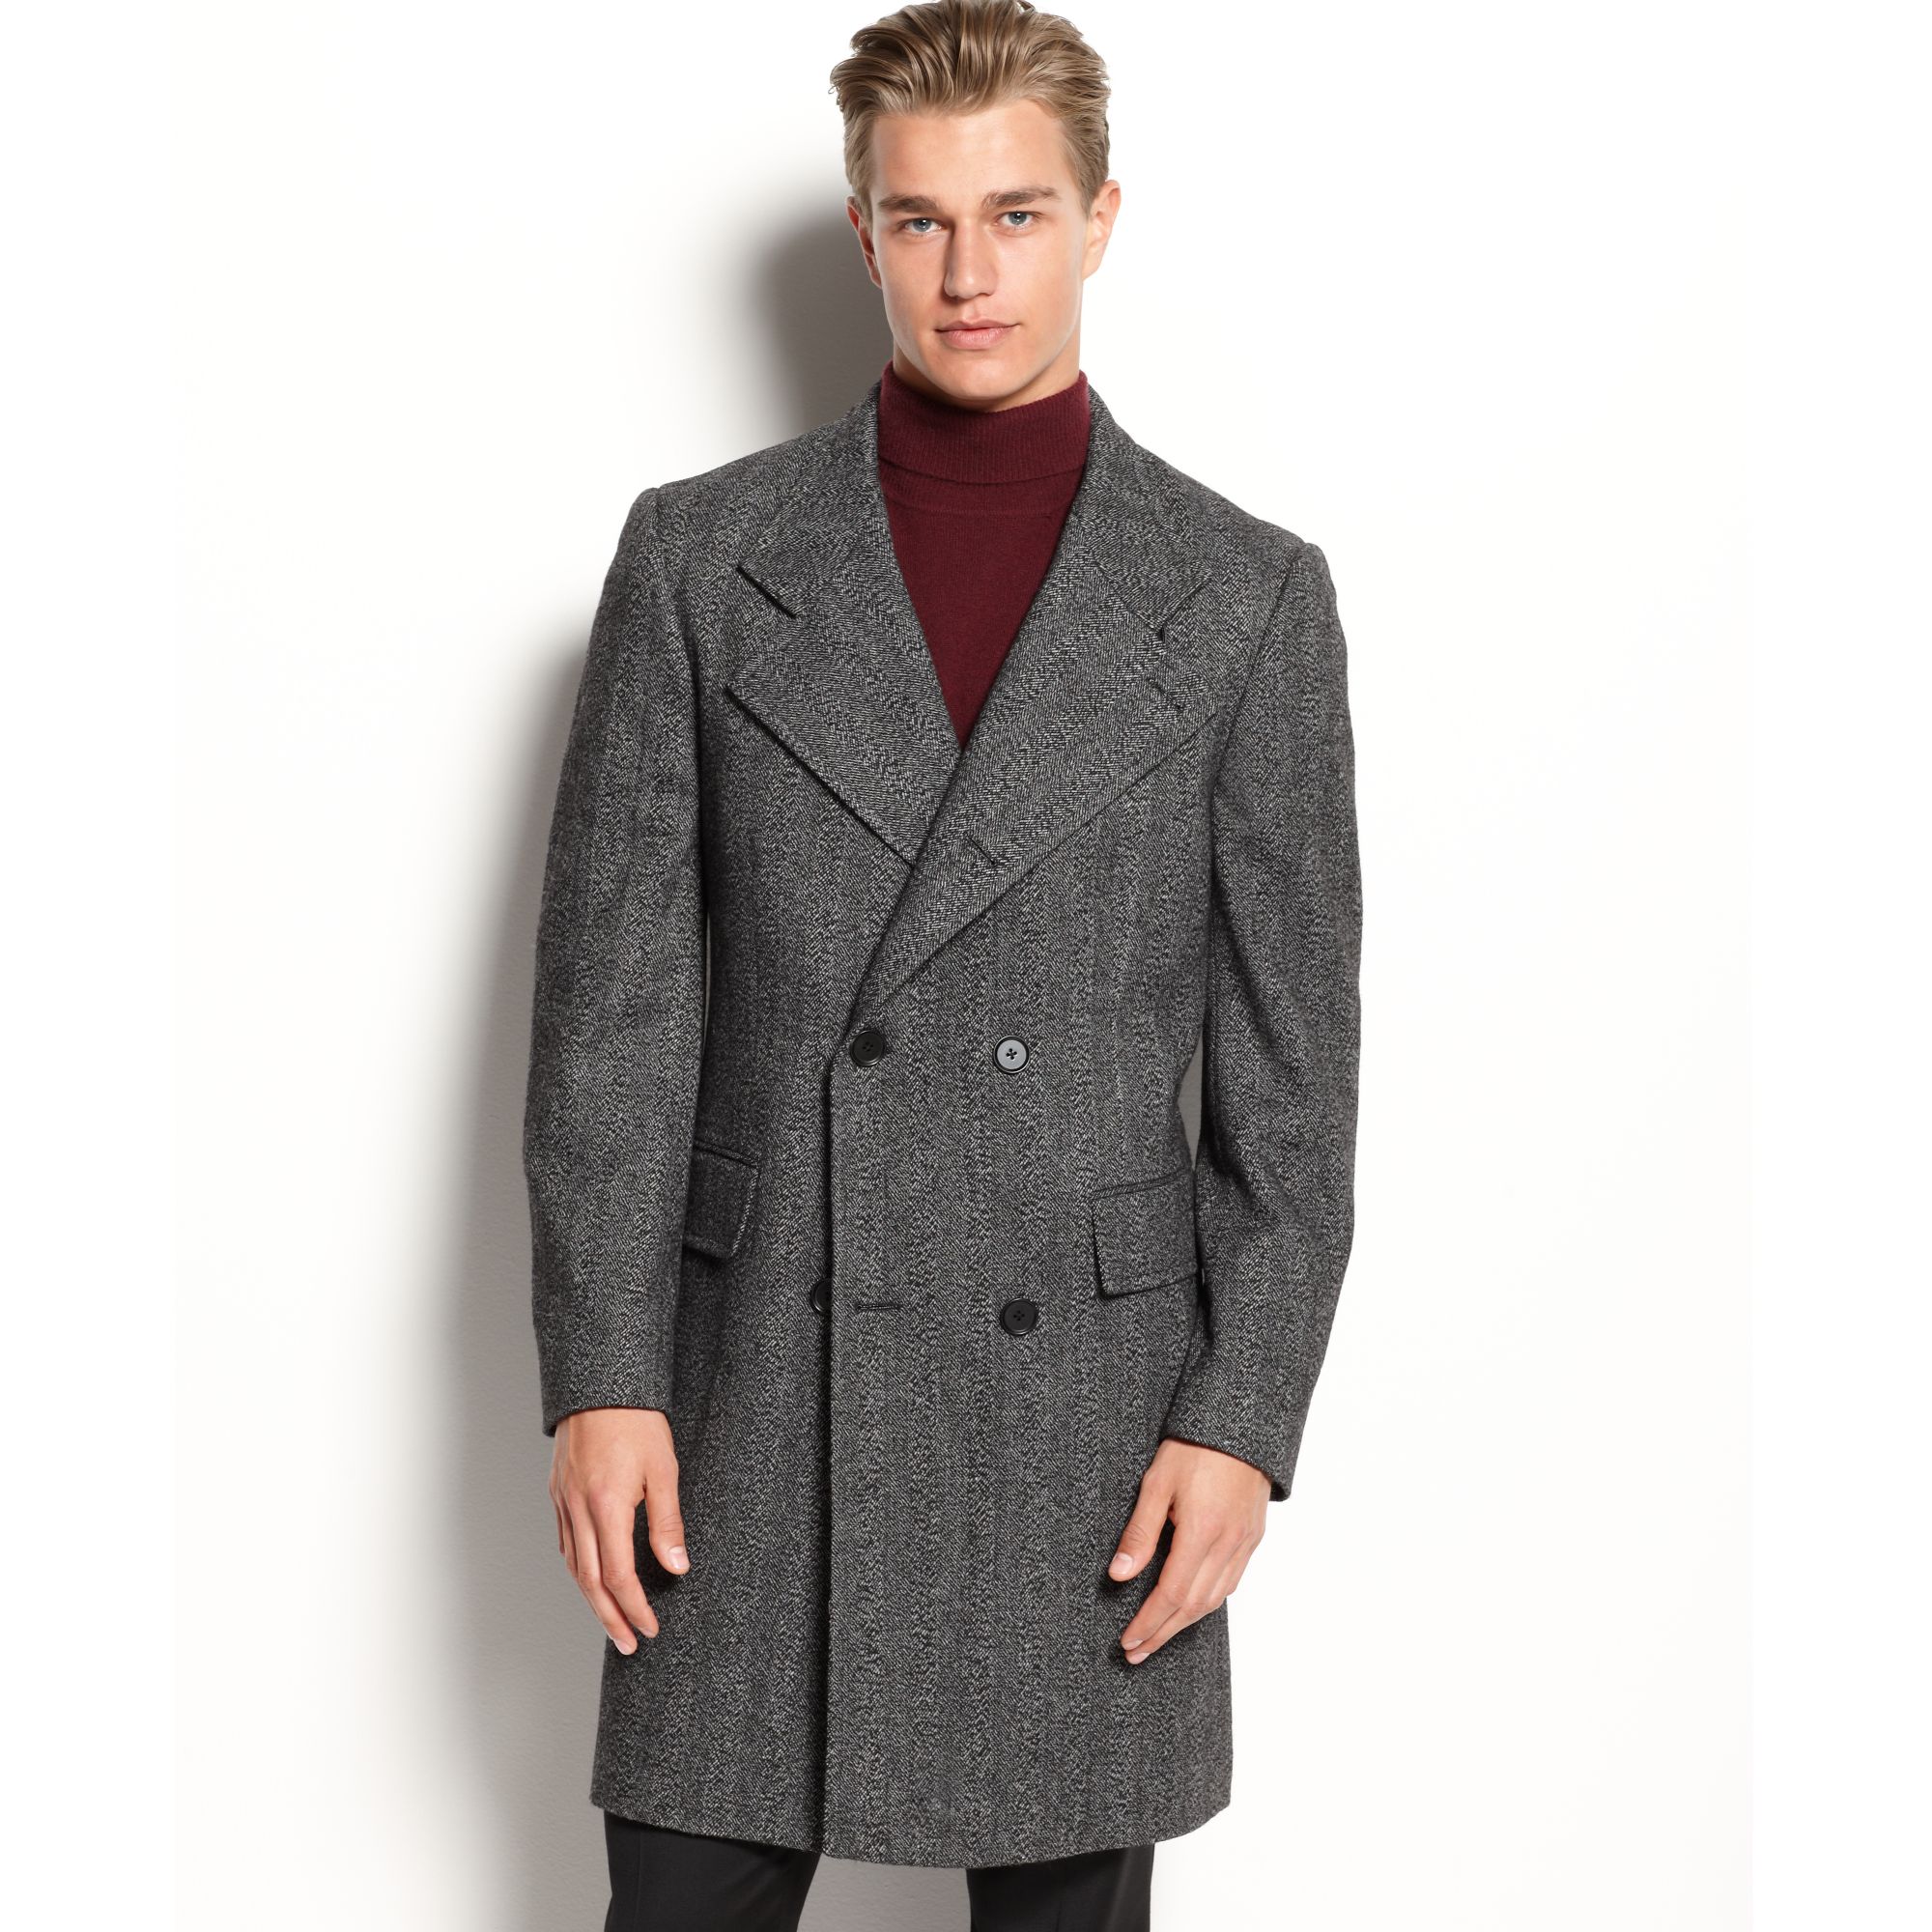 Мужские пальто купить недорого. Wool Blend Coat пальто мужское\. Wool and Cashmere пальто мужское. Пальто 'Herringbone. Пальто шерстяное Кромби.